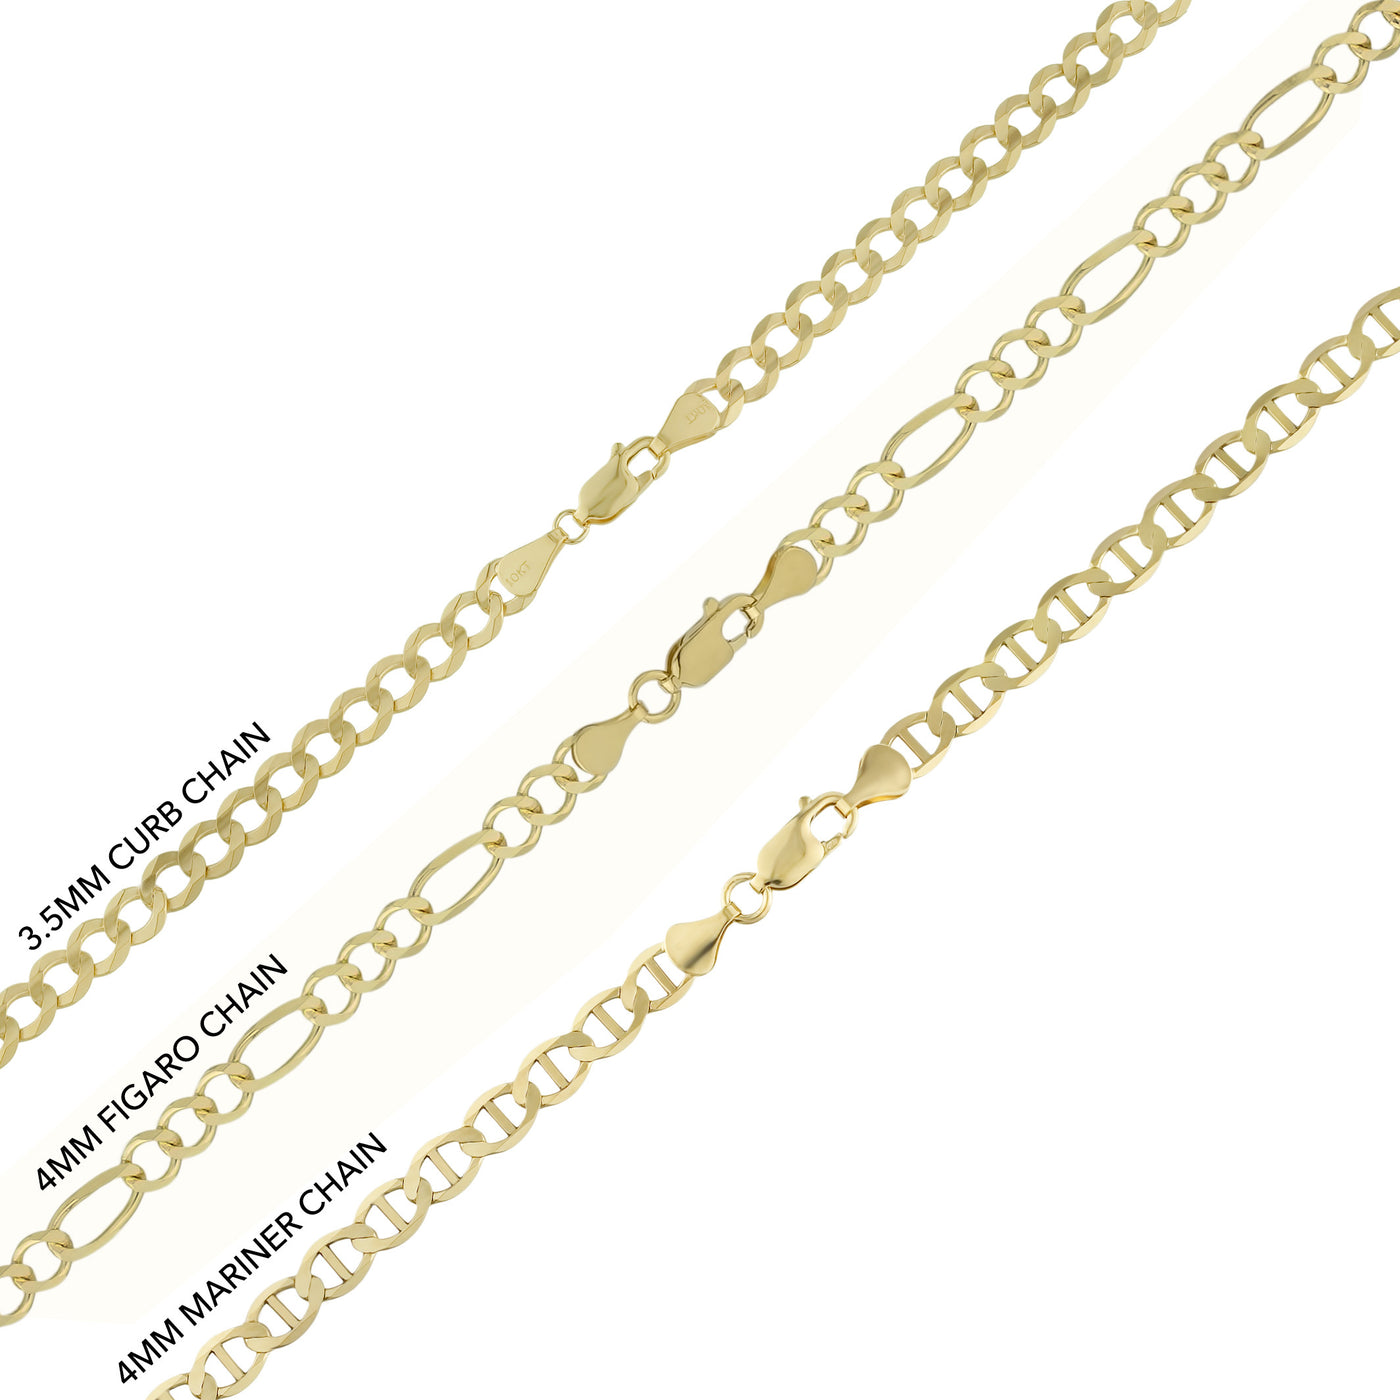 1 1/4" CZ Dallas Cowboys Helmet Pendant & Chain Necklace Set 10K Yellow Gold